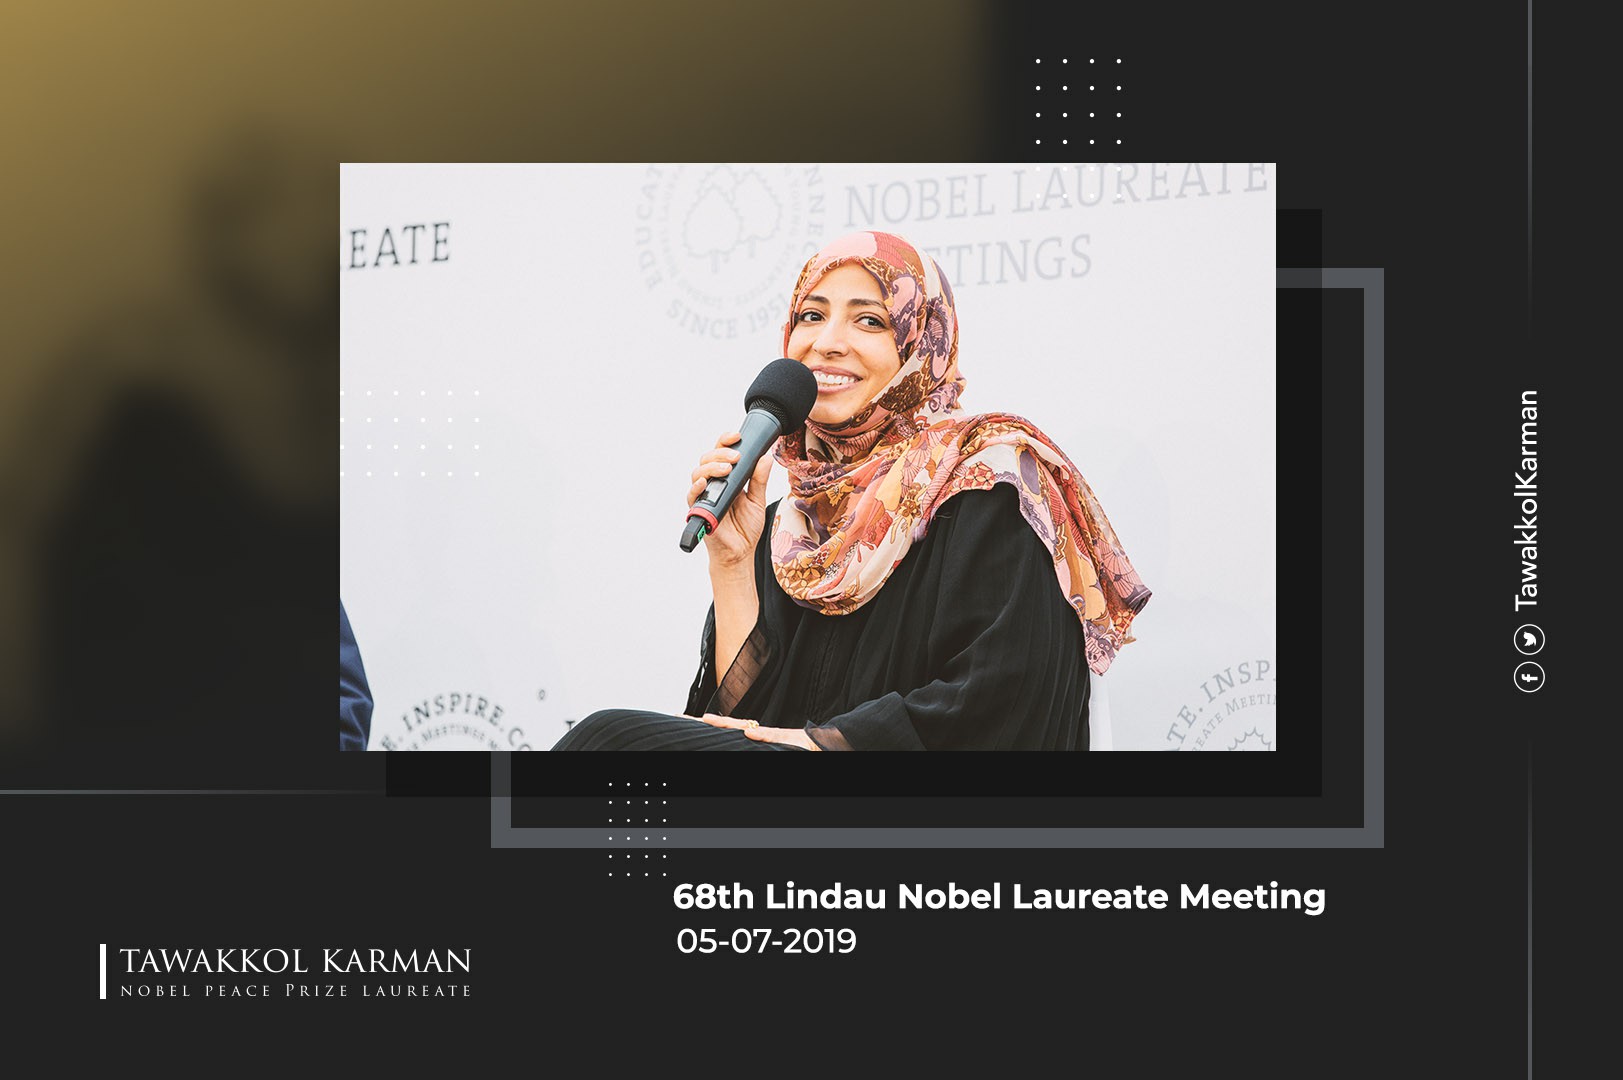 Participation of Tawakkol Karman in the 68th Lindau Nobel Laureate Meeting